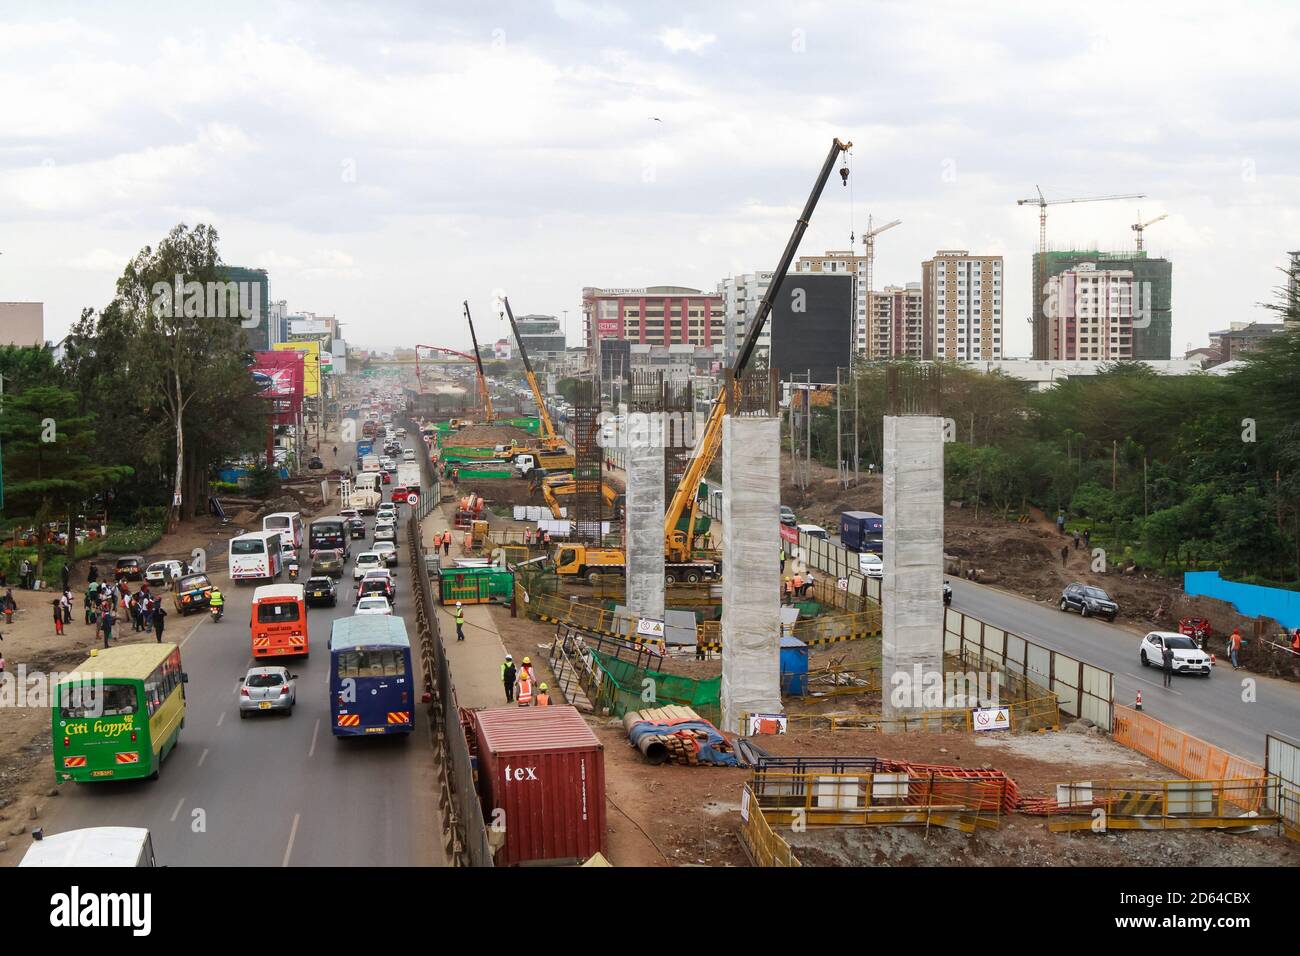 Nairobi, Kenya. 13 ottobre 2020. Una visione generale del flusso di traffico e la costruzione su una sezione 2 del progetto della superstrada di Nairobi lungo la strada di Mombasa. Il governo del Kenya sta costruendo la superstrada di Nairobi, una strada a pedaggio lunga 27.1 km destinata a decongest Nairobi fornendo un trasporto più veloce e affidabile. La superstrada vale circa 505.5 milioni di dollari e dovrebbe essere completata nel 2022, essendo finanziata dalla Cina nel quadro di una partnership pubblico-privato (PPP) e costruita dagli appaltatori cinesi, China Road and Bridge Corporation (Credit Image: © Boniface Muthoni/SOPA Images via Z Foto Stock